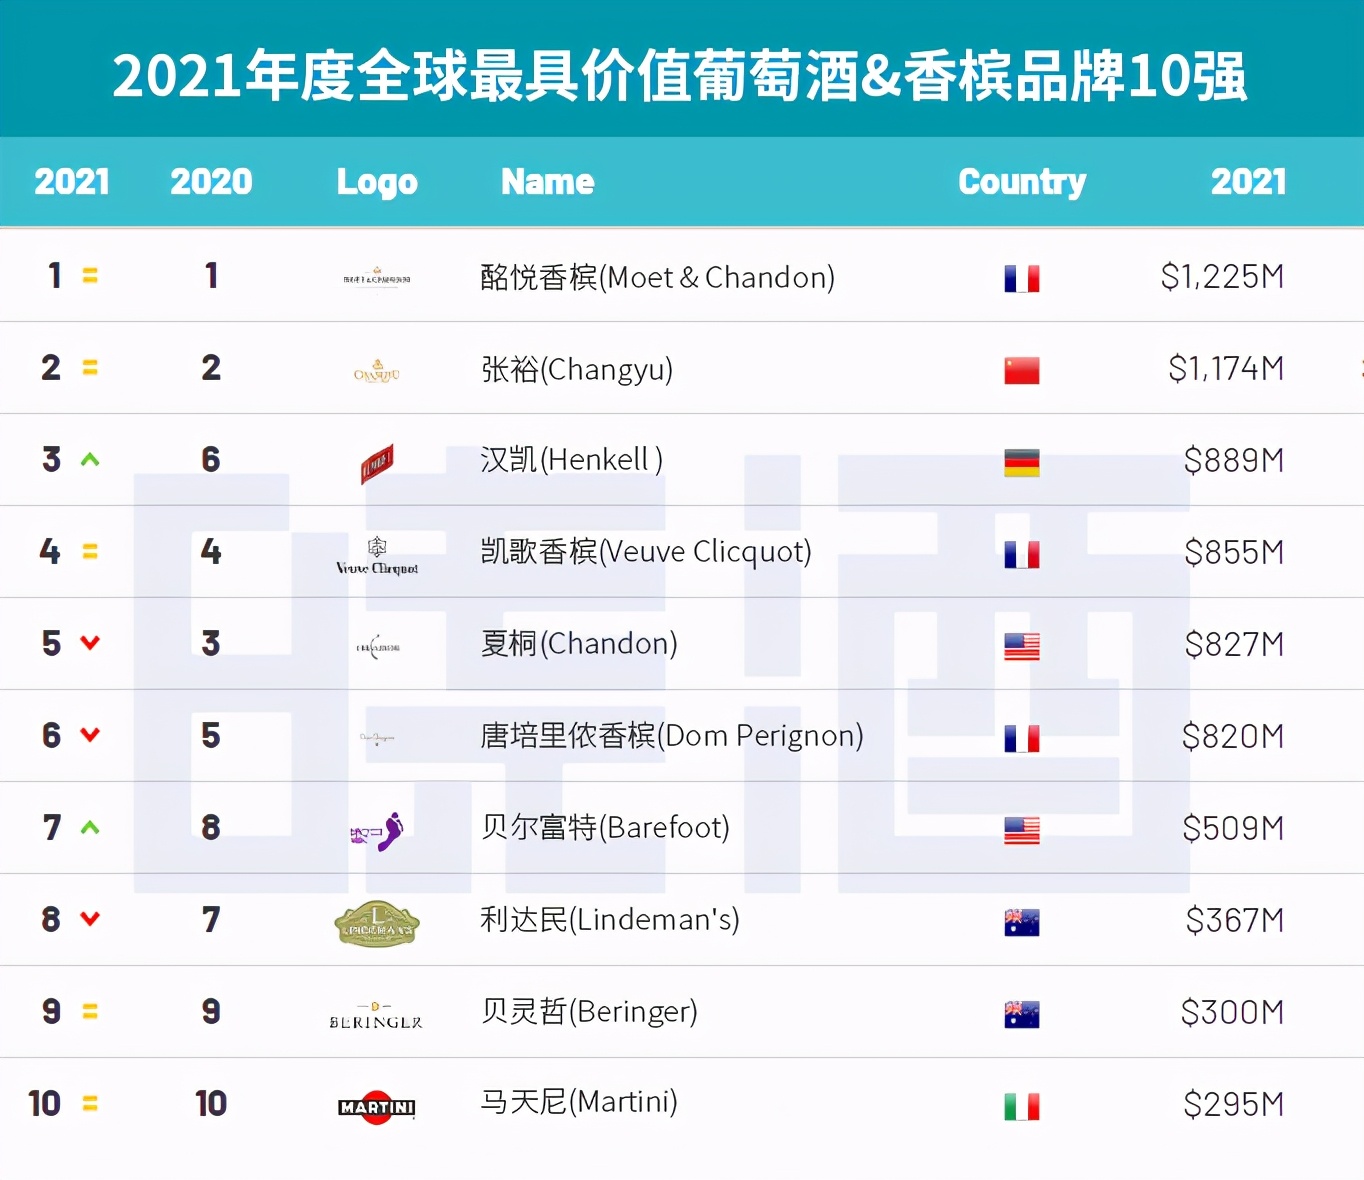 2021全球酒类品牌排行榜公布，中国白酒包揽烈酒榜单前5